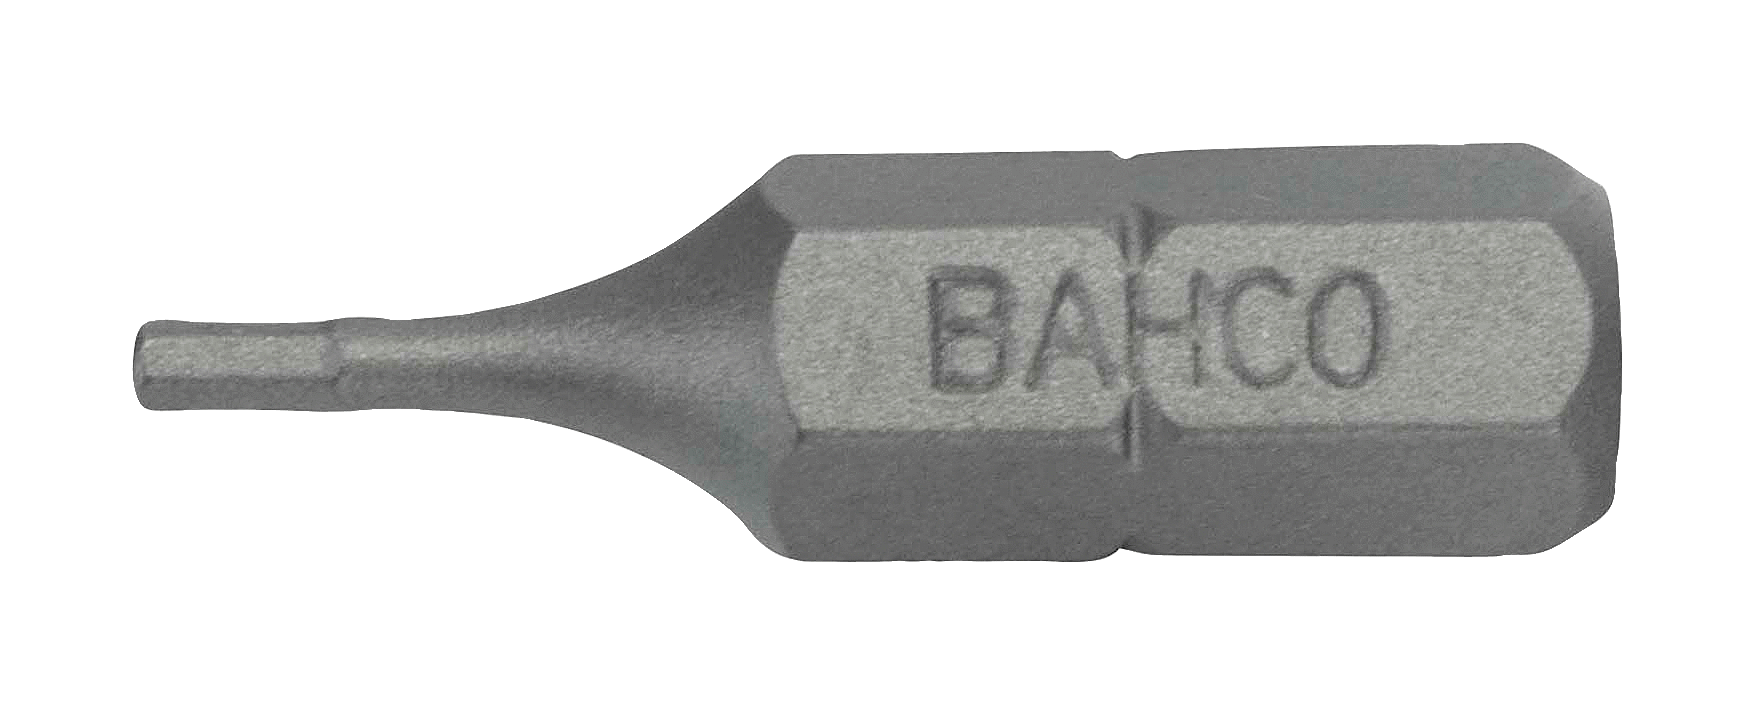 картинка Стандартные биты для отверток под винты с шестигранной головкой, метрические размеры, 25 мм BAHCO 59S/H4-IPB от магазина "Элит-инструмент"